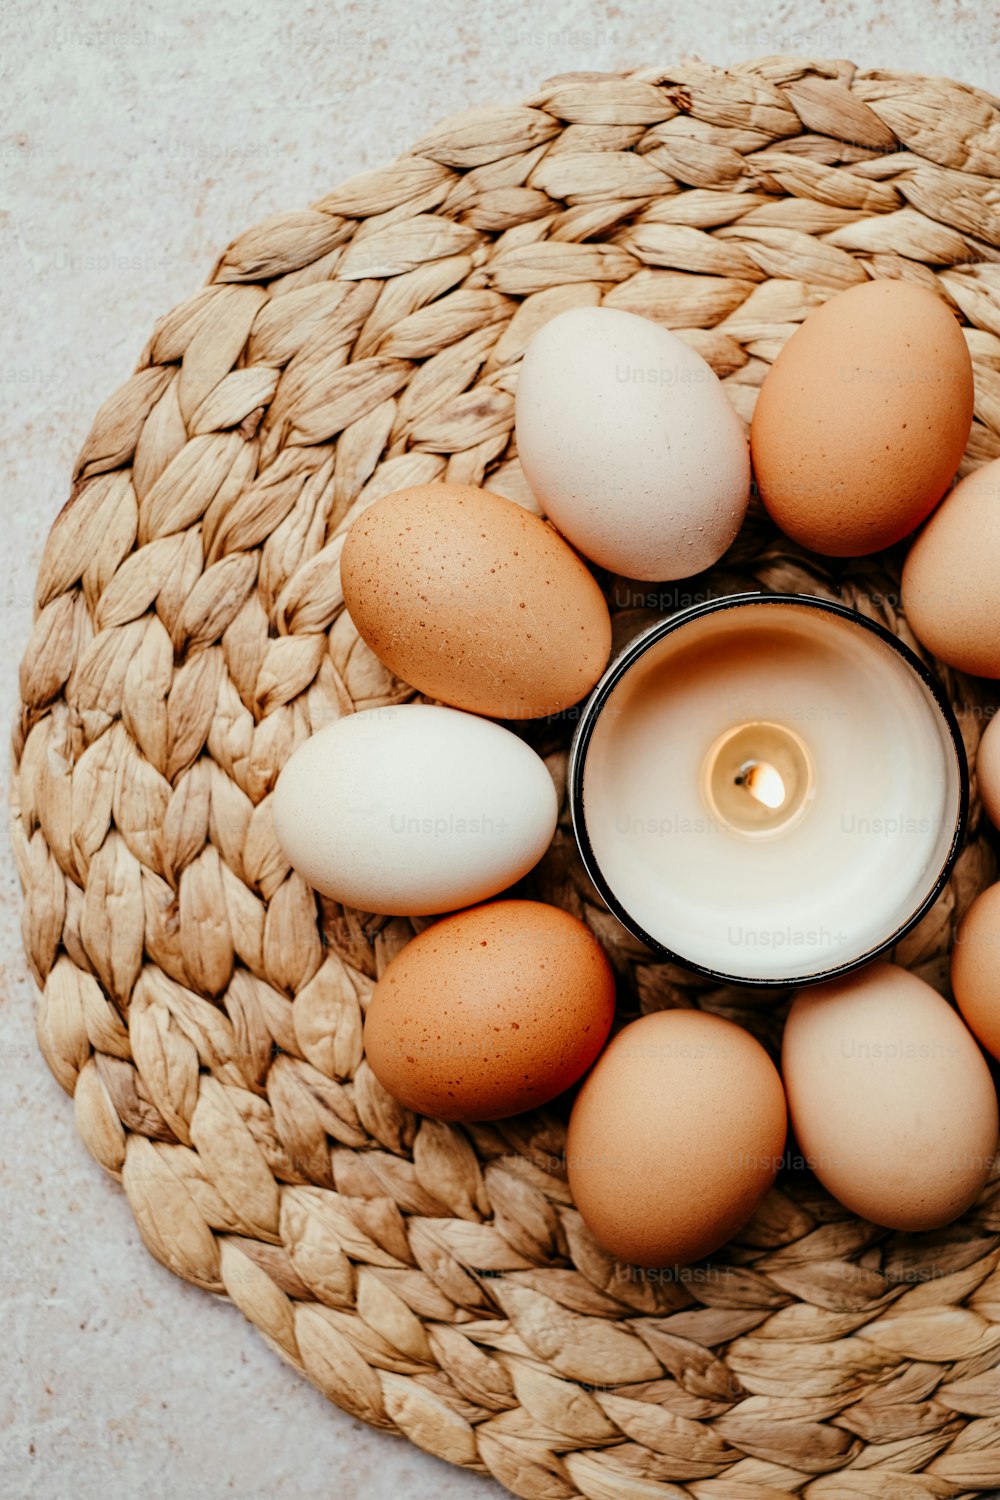 Una vela está rodeada de huevos en una canasta